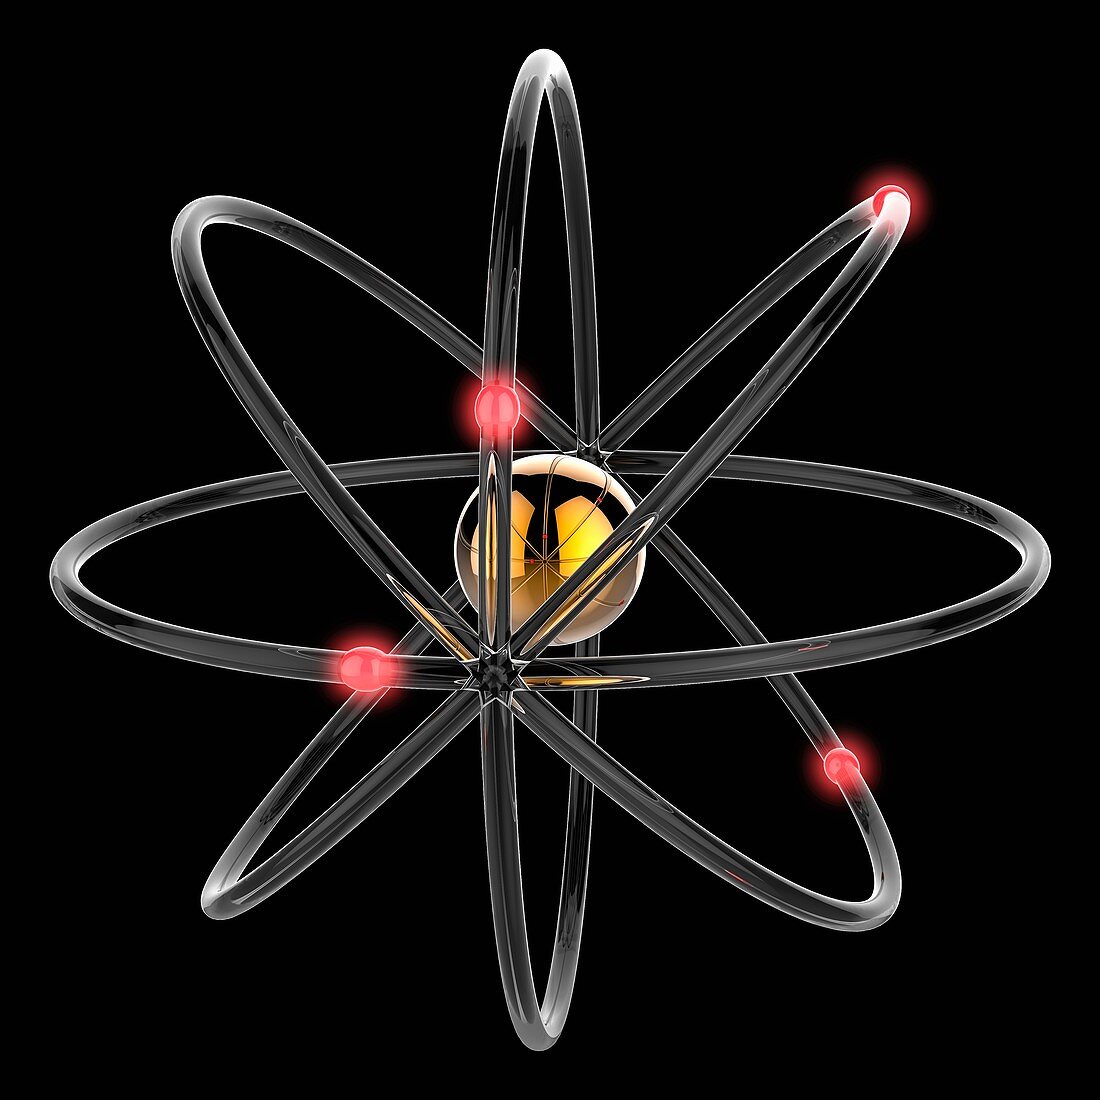 Beryllium atom, illustration